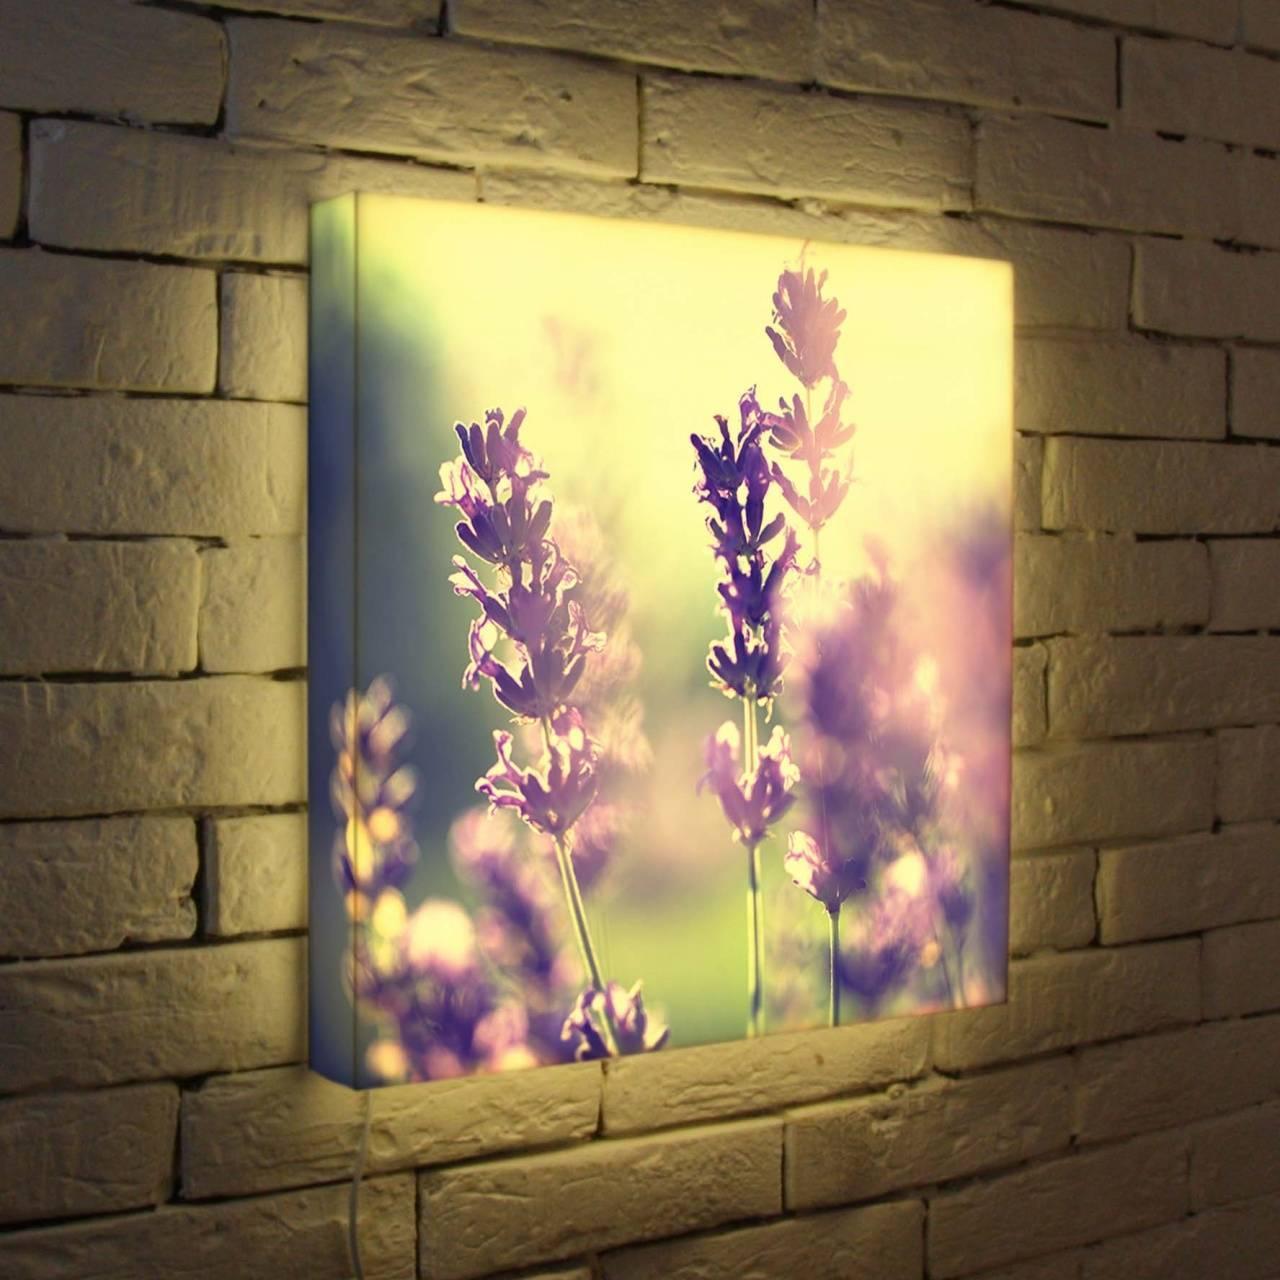 световые панно на стену и картины для интерьера